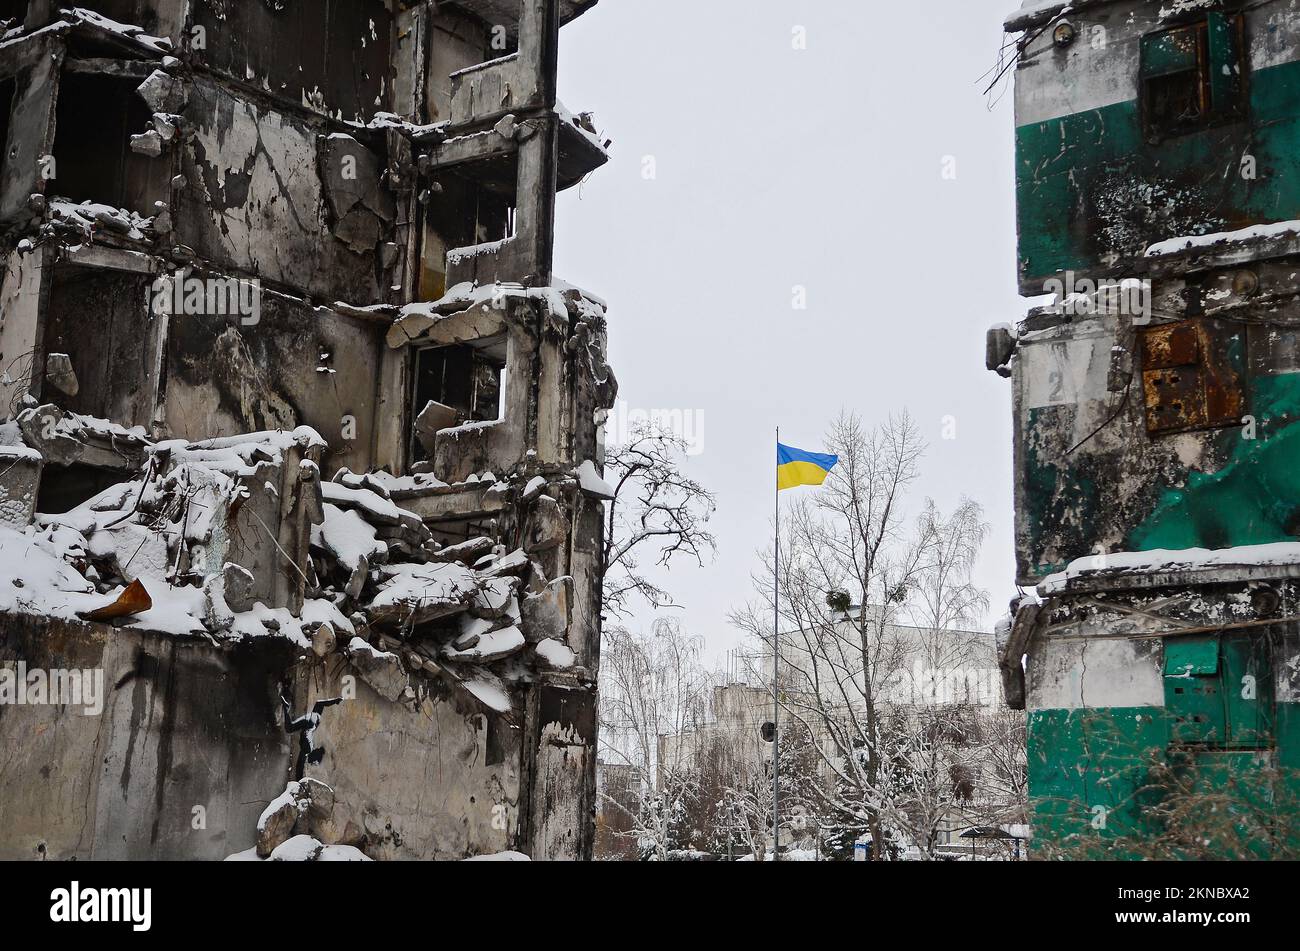 BORODIANKA, UKRAINE - 22 NOVEMBRE 2022 - Un drapeau ukrainien vole sur le poteau près des ruines d'un immeuble d'appartements détruit par les troupes russes où Banque D'Images